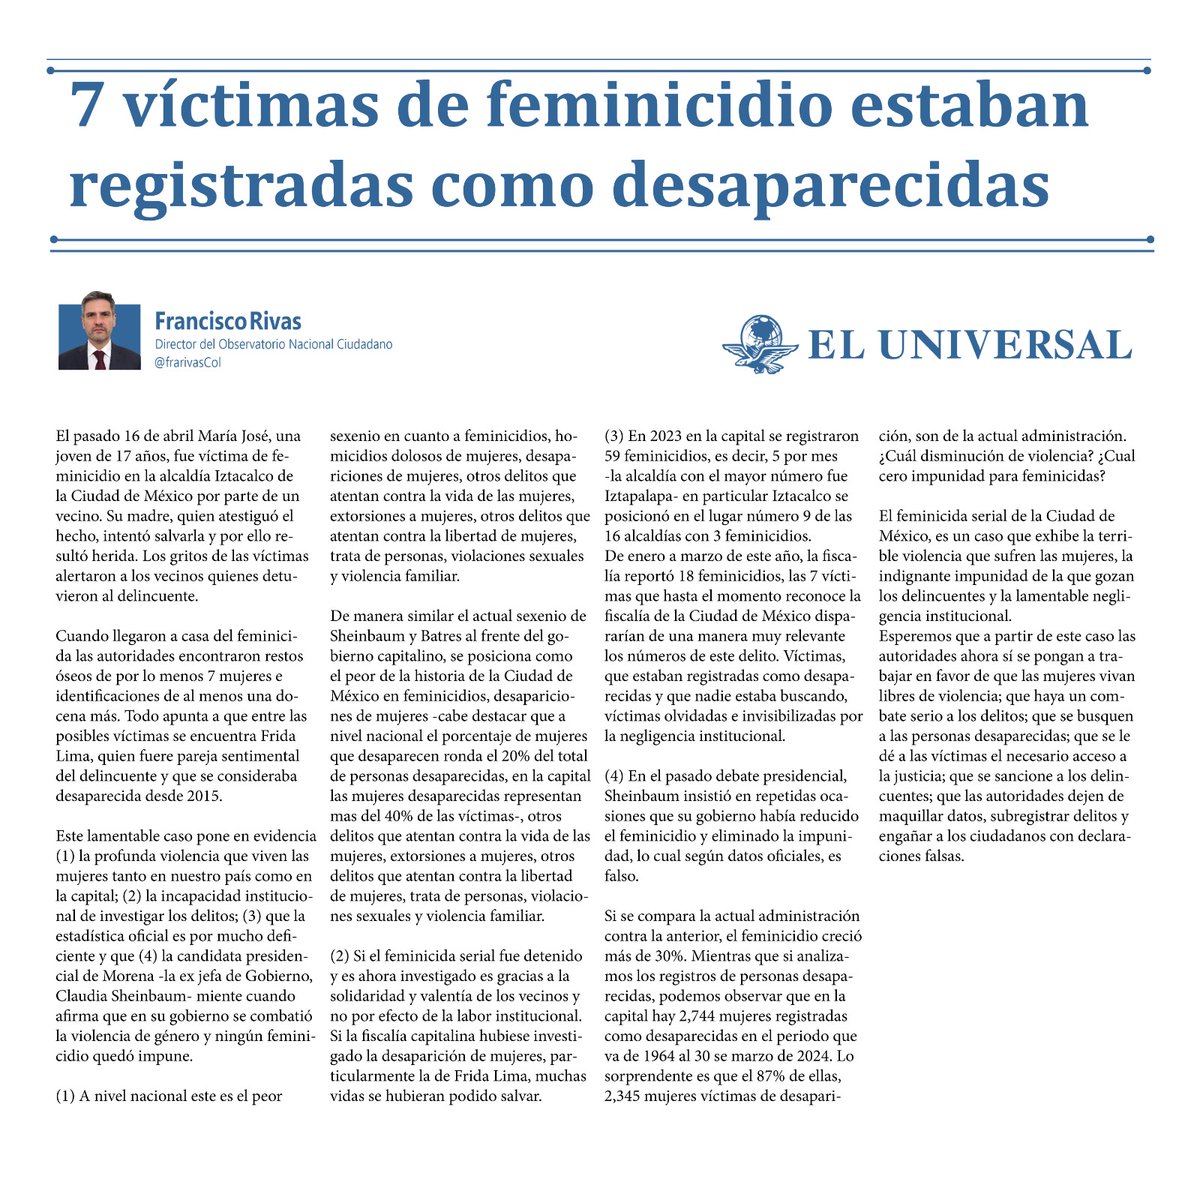 El feminicida serial de la Ciudad de México, es un caso que exhibe la terrible violencia que sufren las mujeres, la indignante impunidad de la que gozan los delincuentes y la lamentable negligencia institucional.@ObsNalCiudadano @Univ_Opinion t.ly/AU8L2